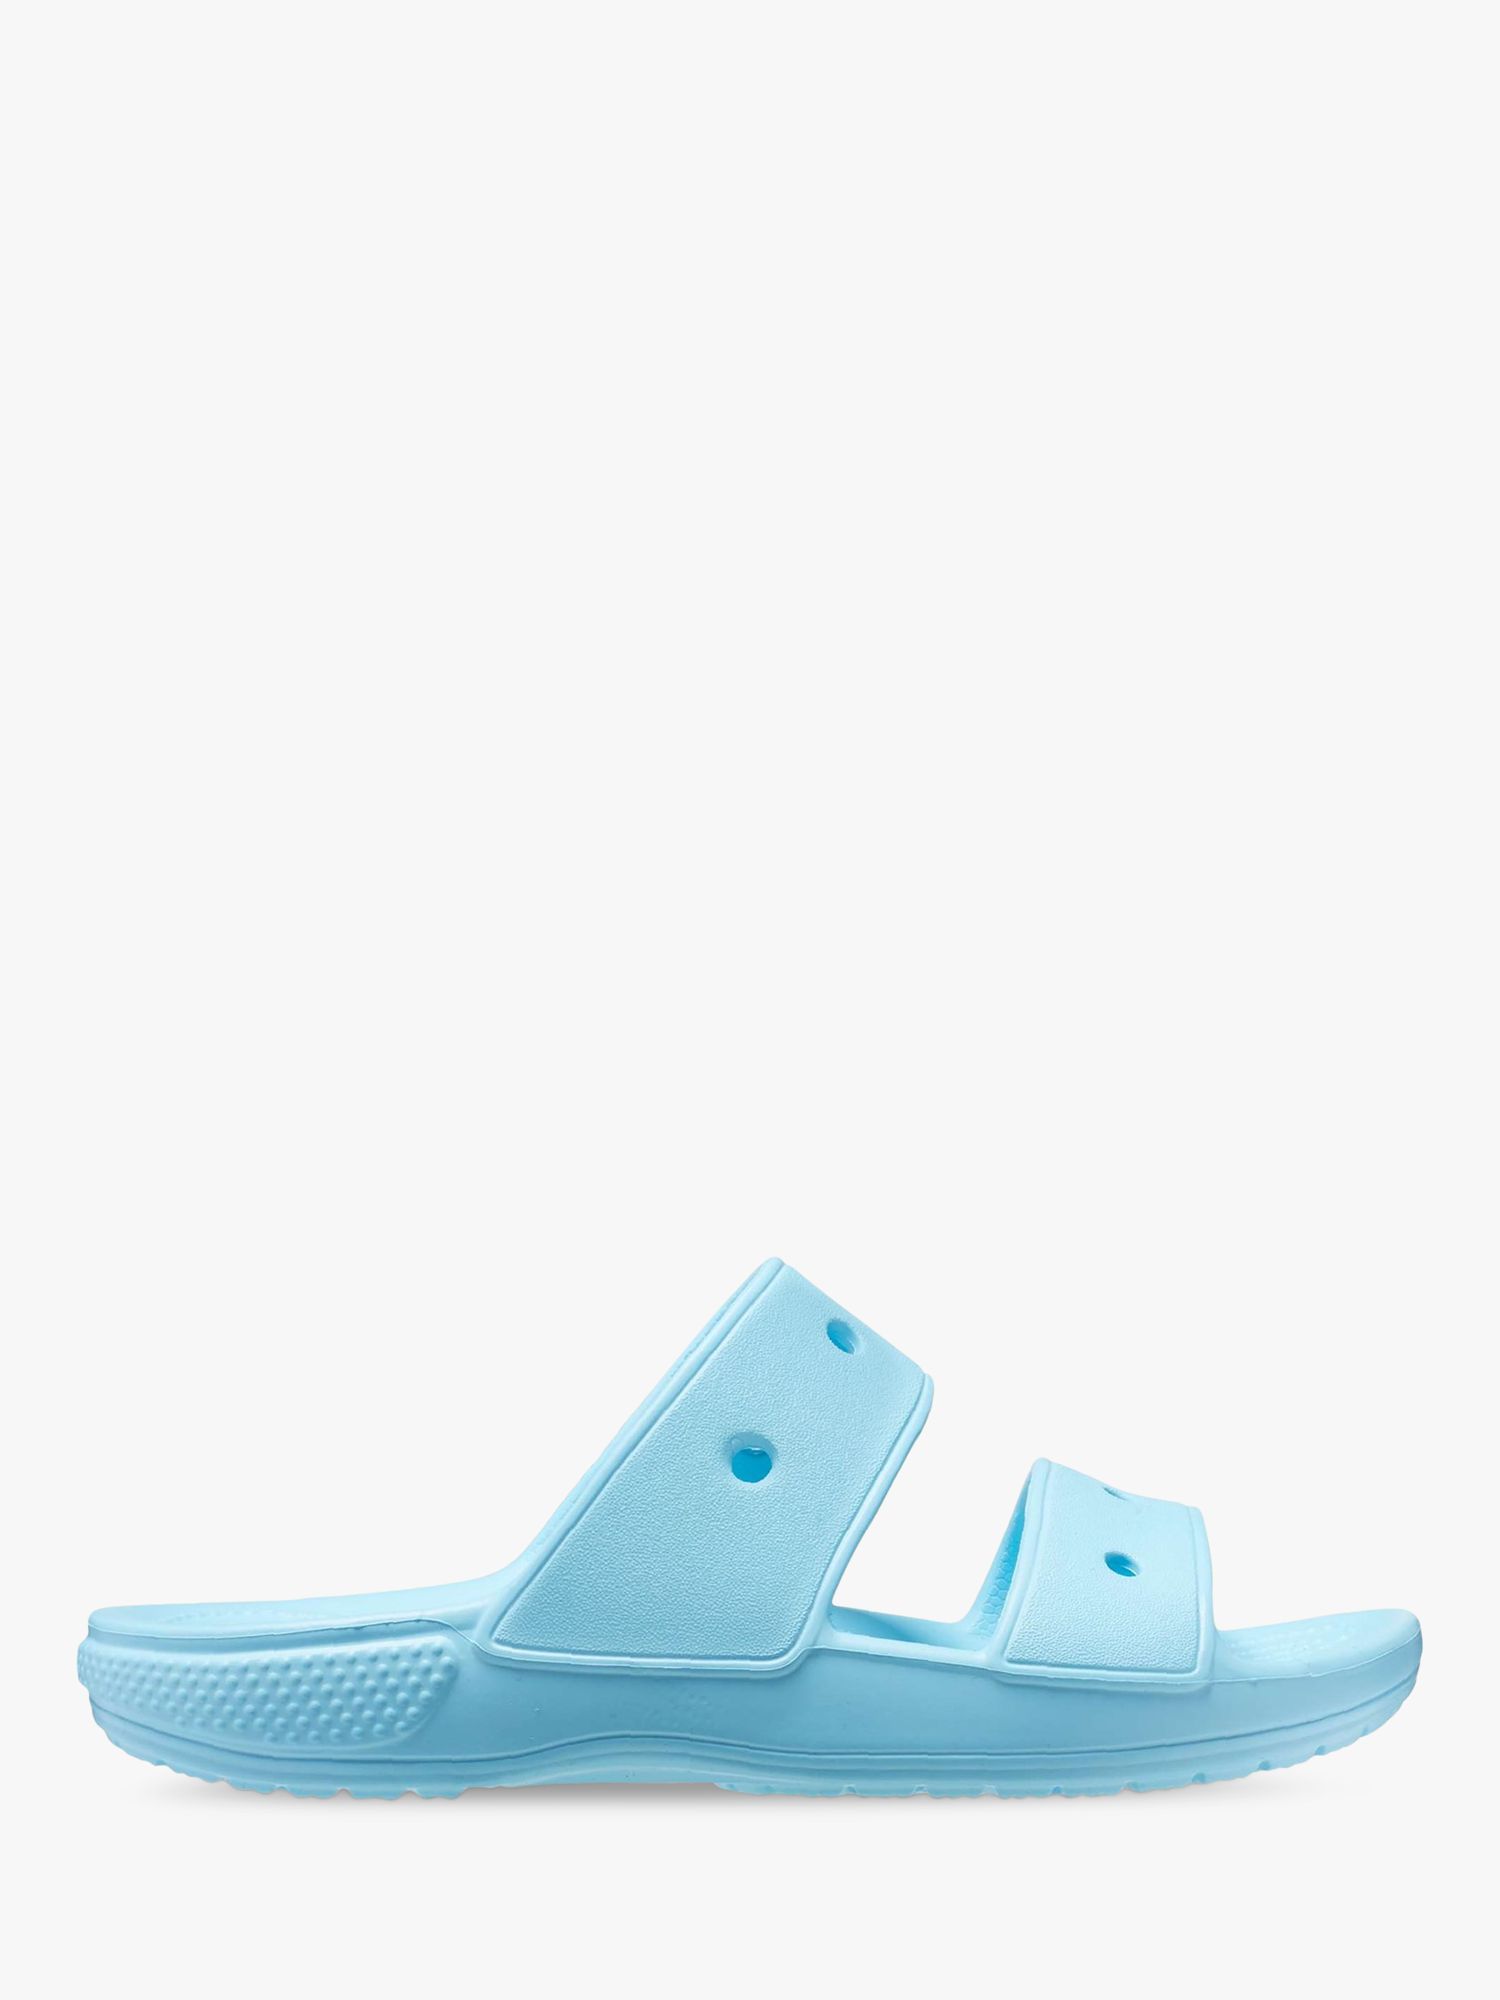 Crocs Classic Double Strap Slider Sandals, Blue